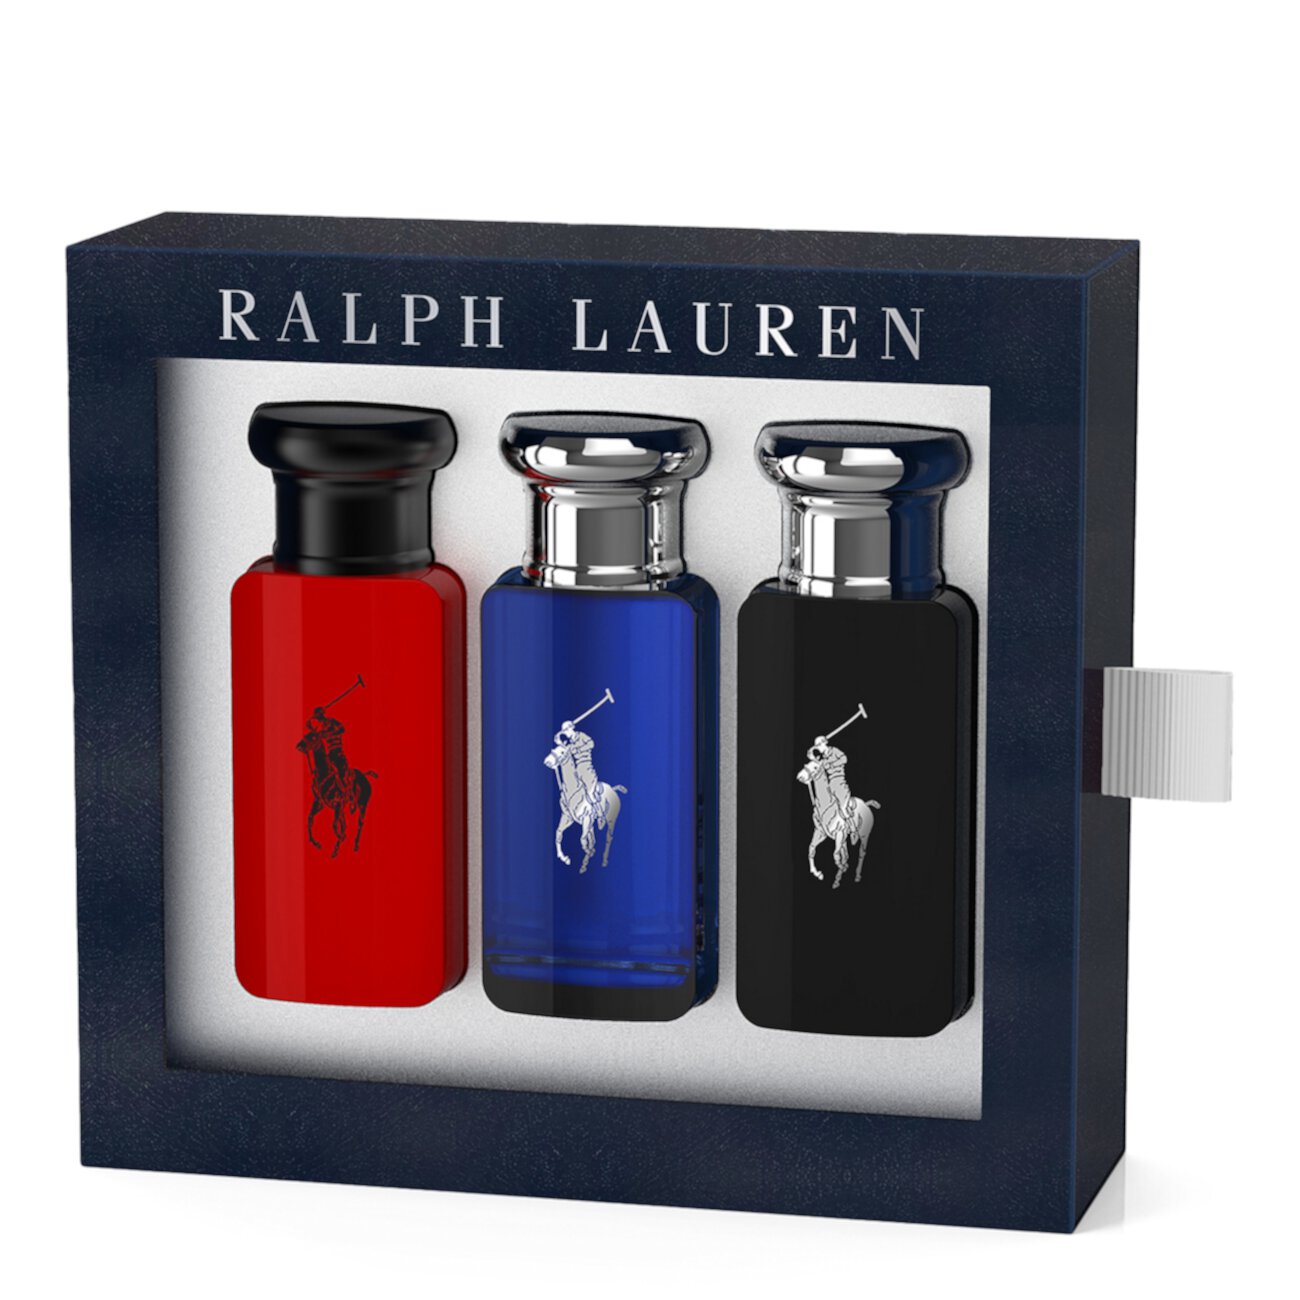 Размер подарочного набора из 3 предметов World of Polo Ralph Lauren